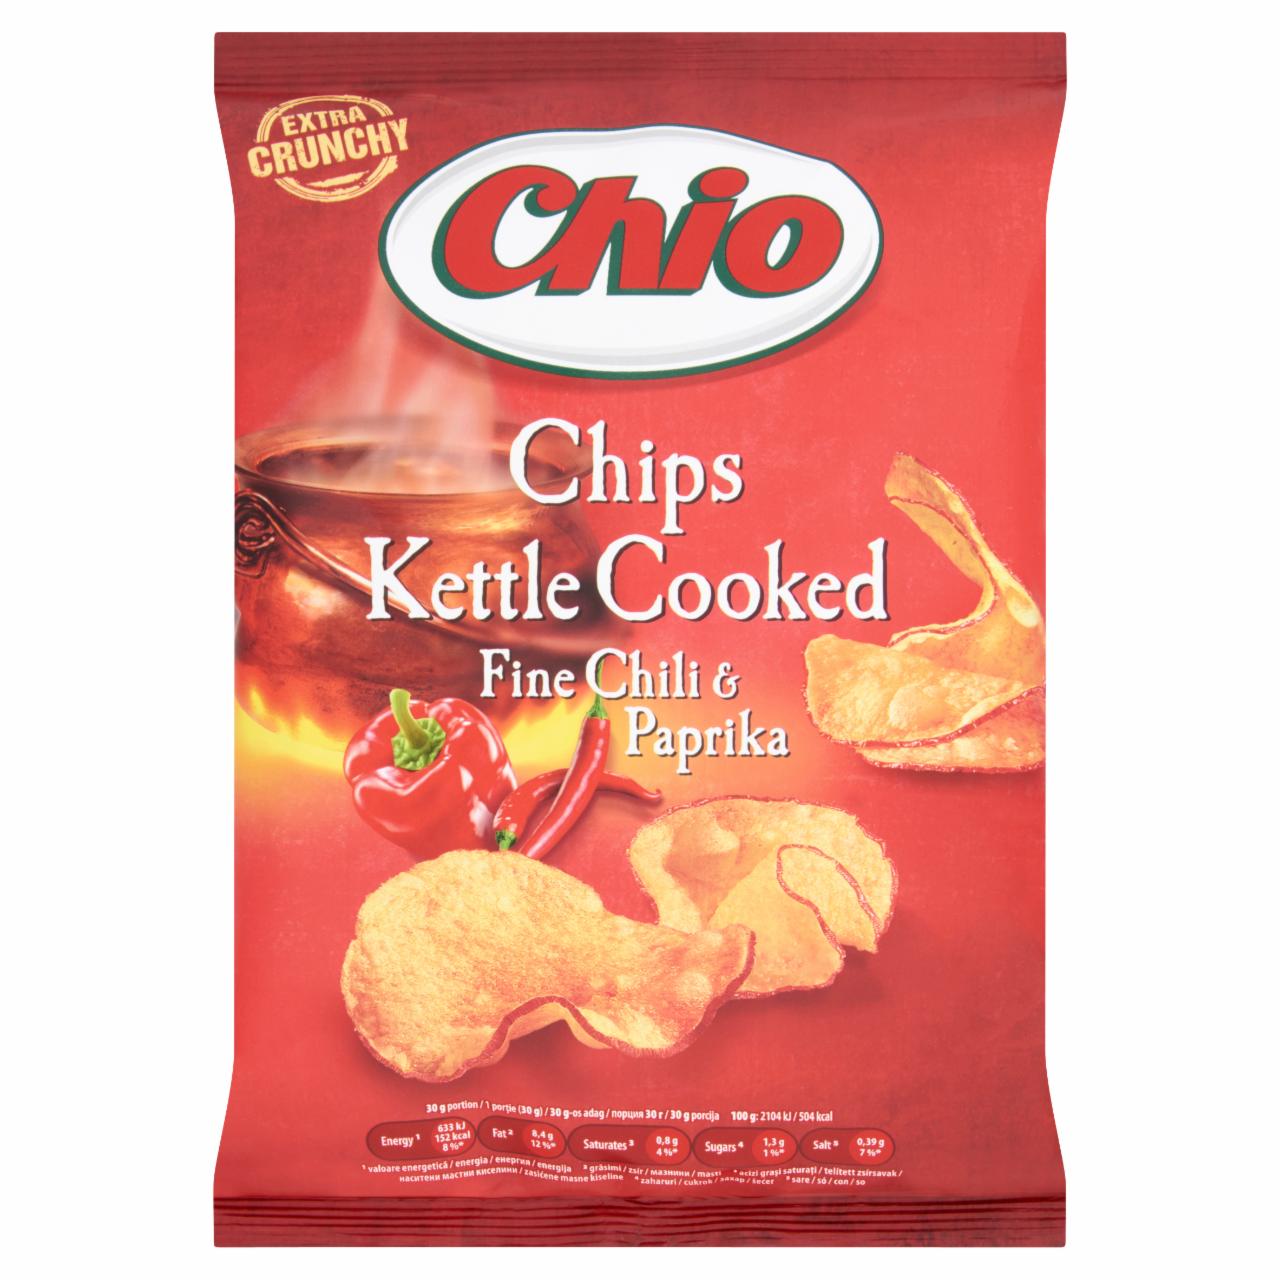 Képek - Chio Kettle Cooked chili és paprika ízesítésű héjas burgonyachips 80 g